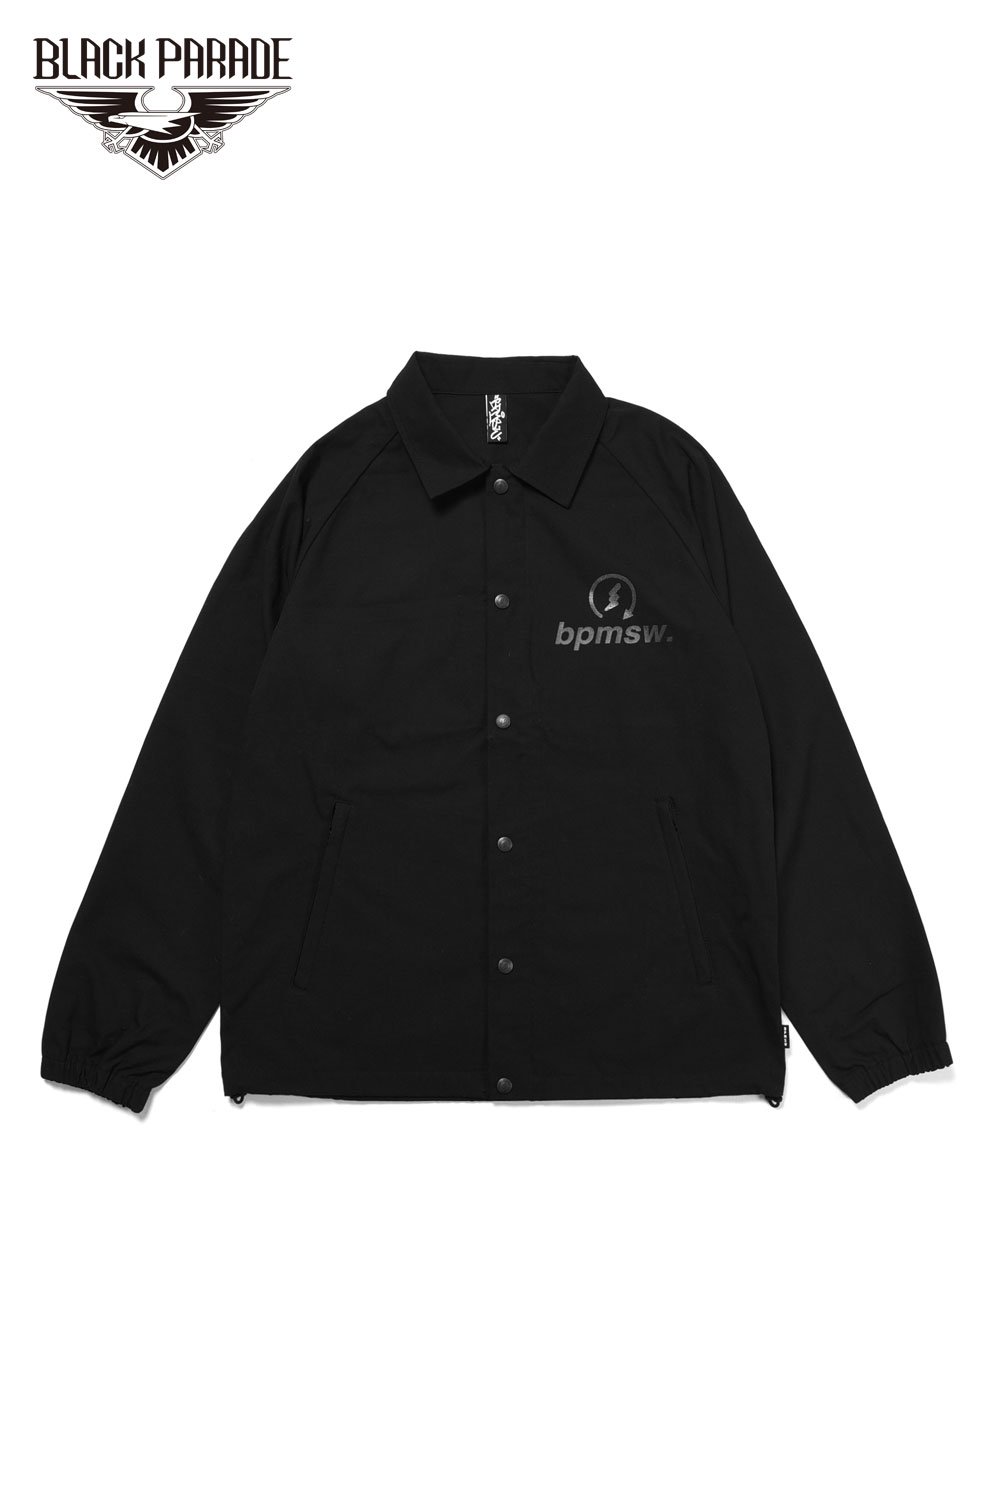 新品 [Black Parade] Tag Logo Coach Jacket3万でお願いします